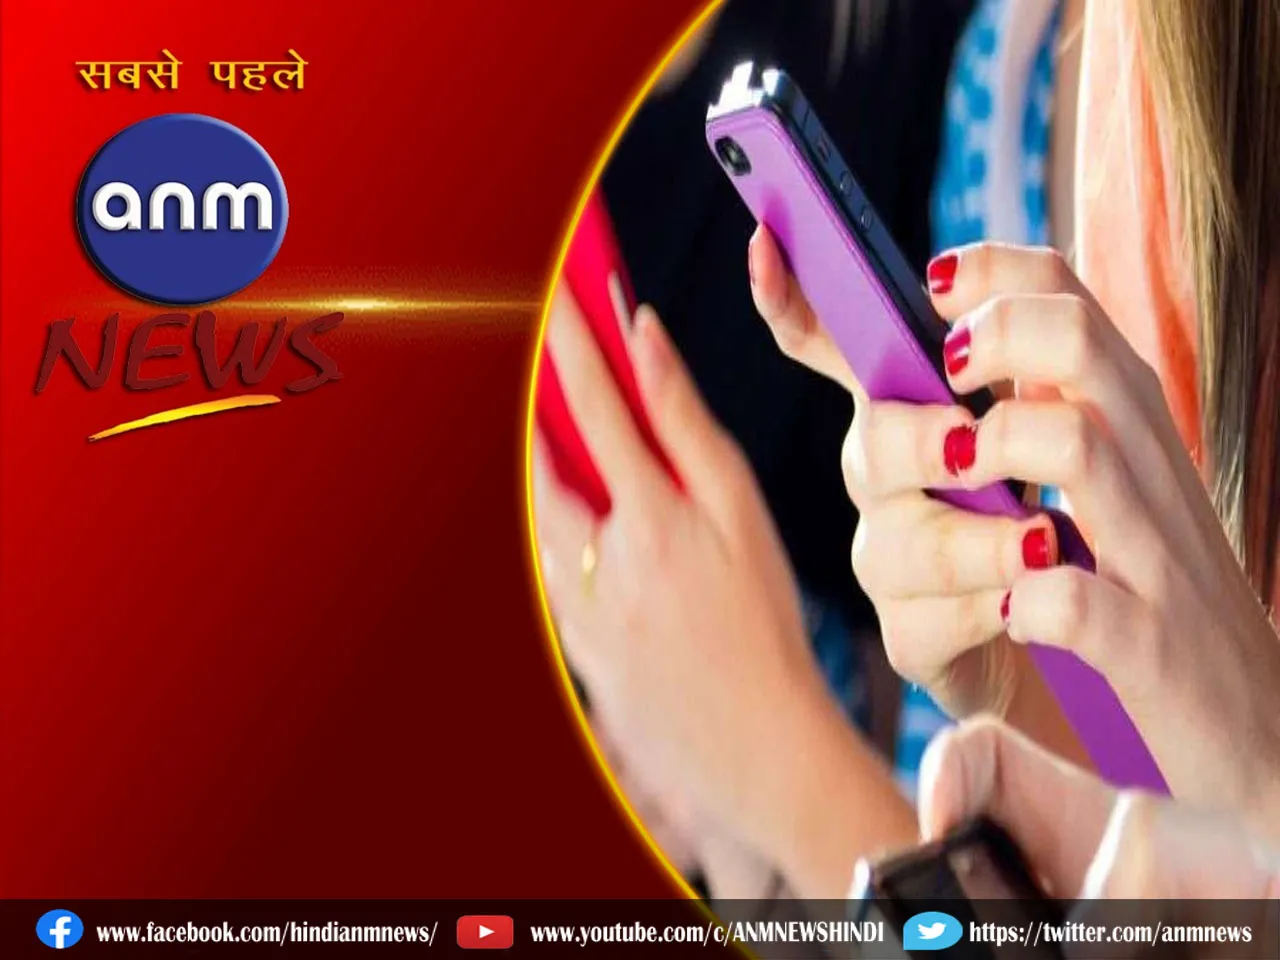 Mobile Facts in Hindi: मोबाइल फ़ोन के बारे में कुछ रोचक तथ्य